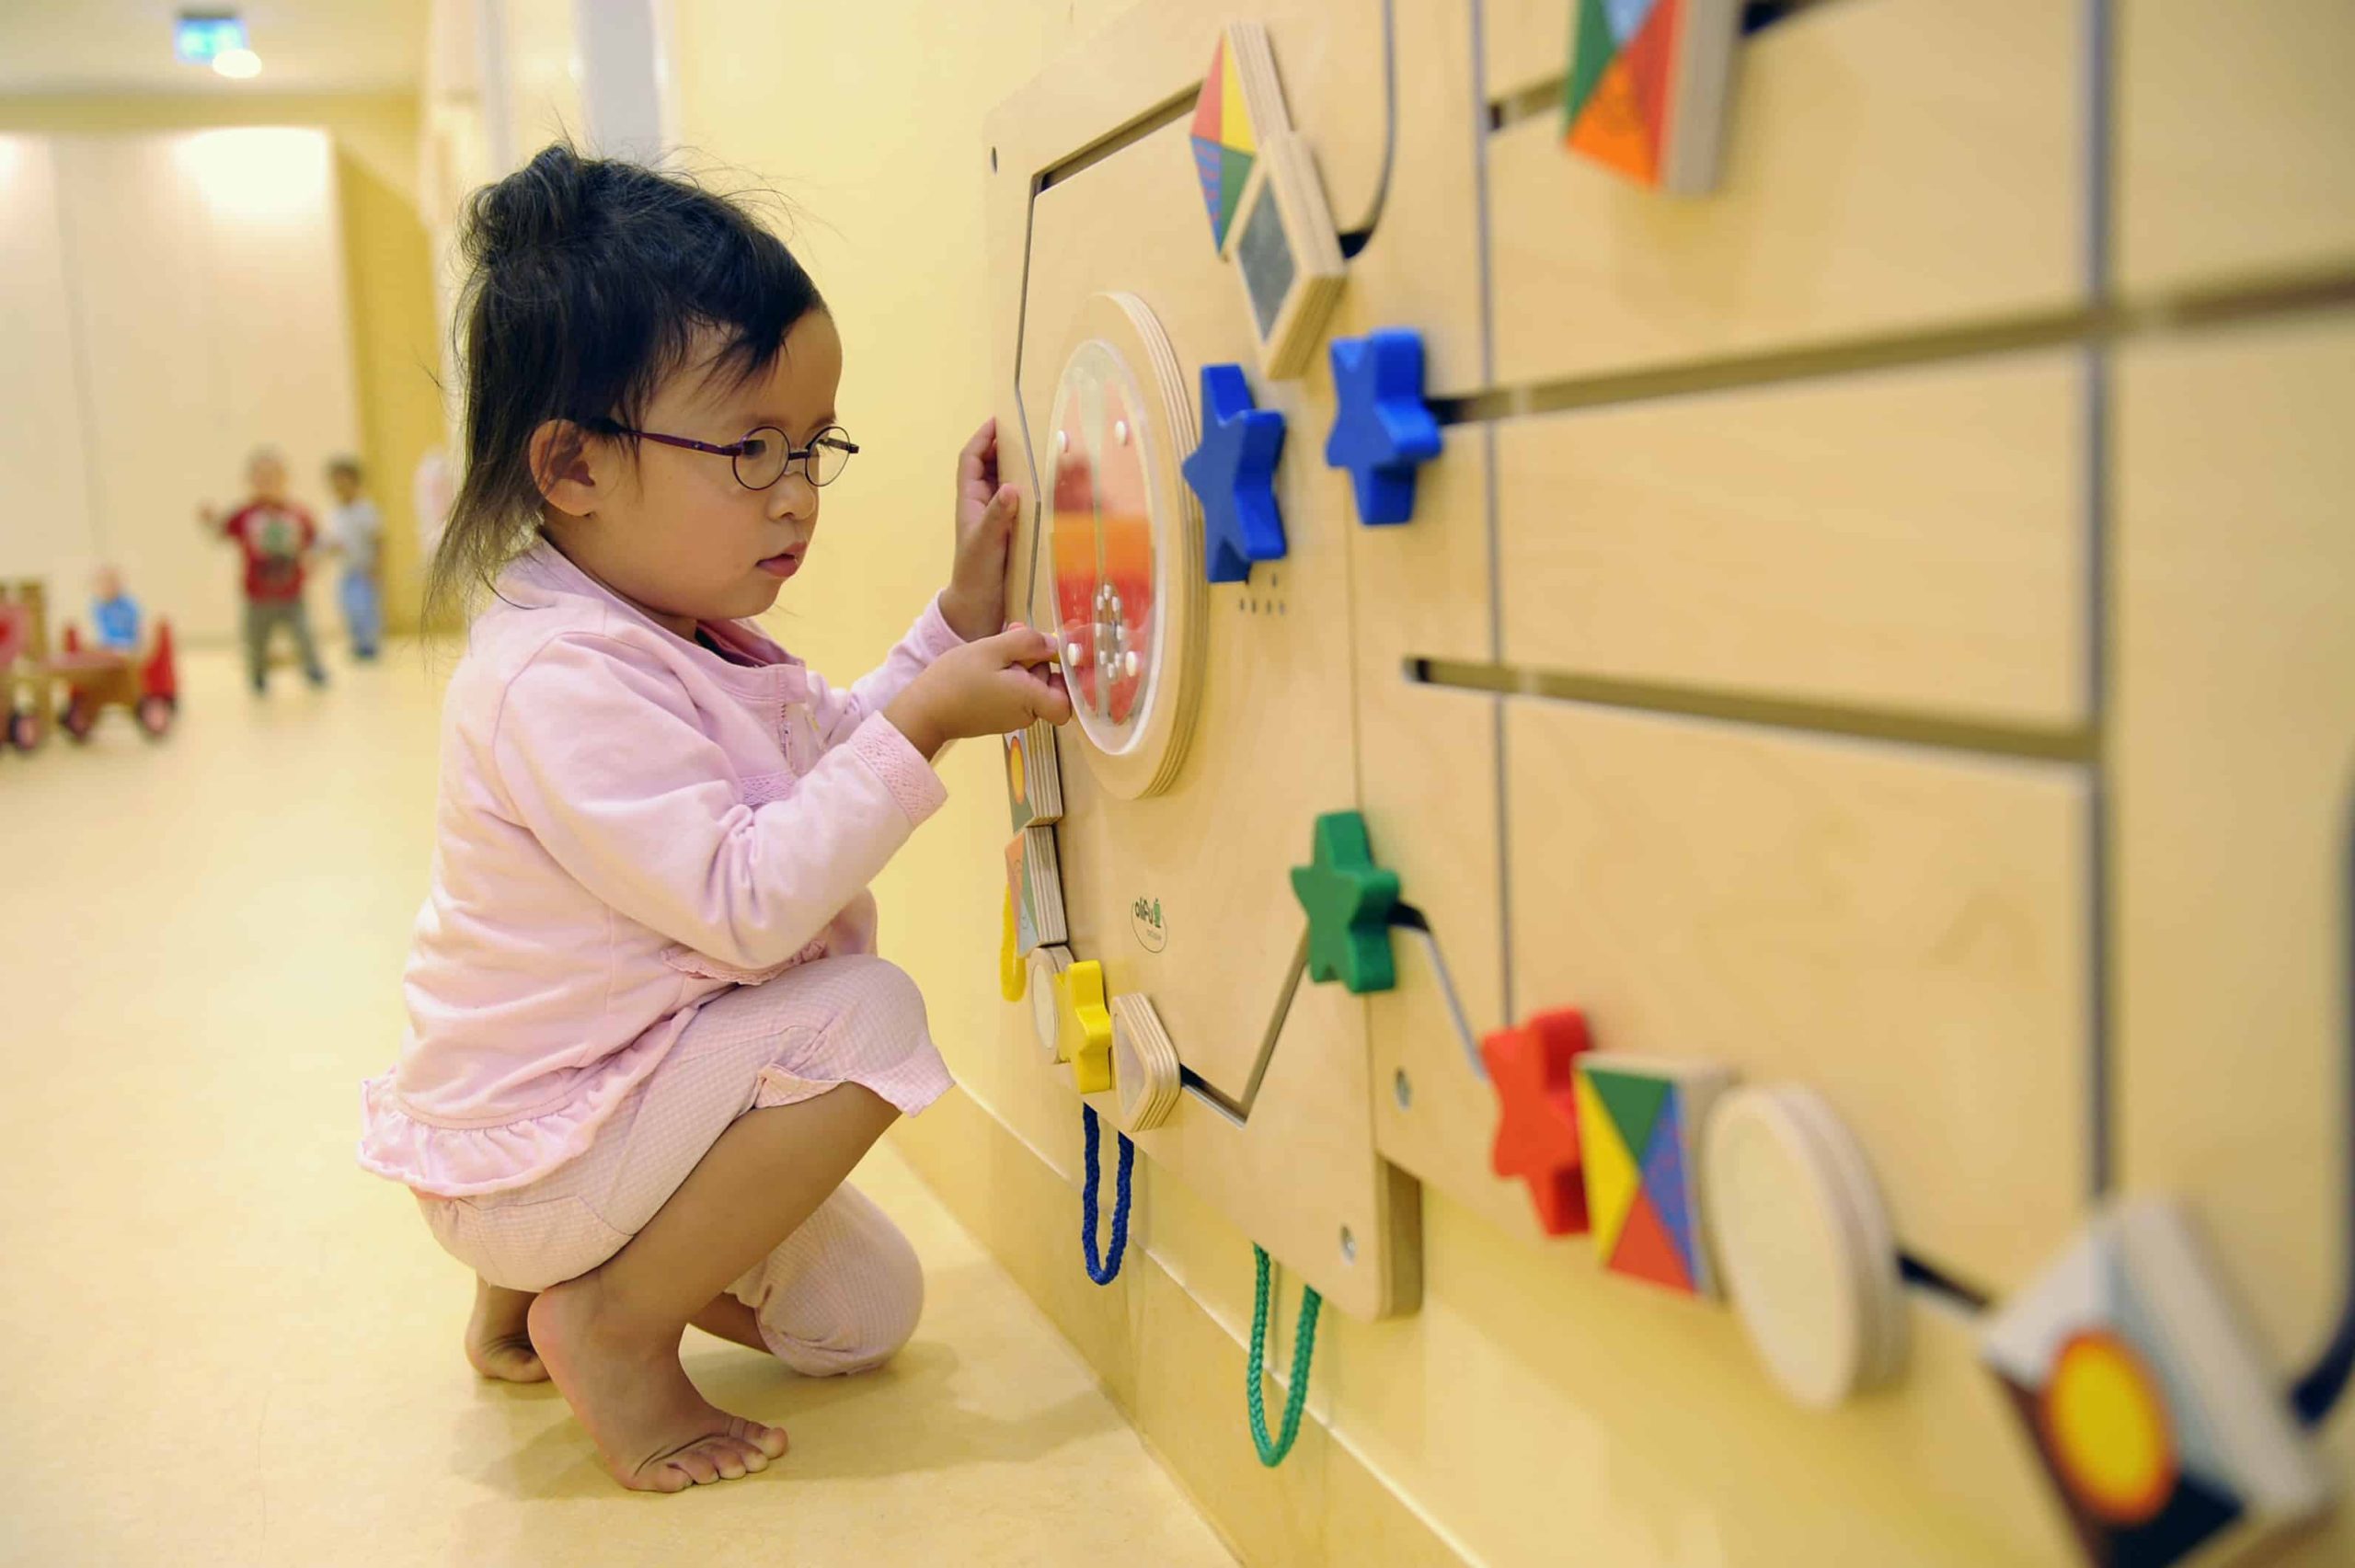 Kind spielt an Schiebeelementen an der Wand